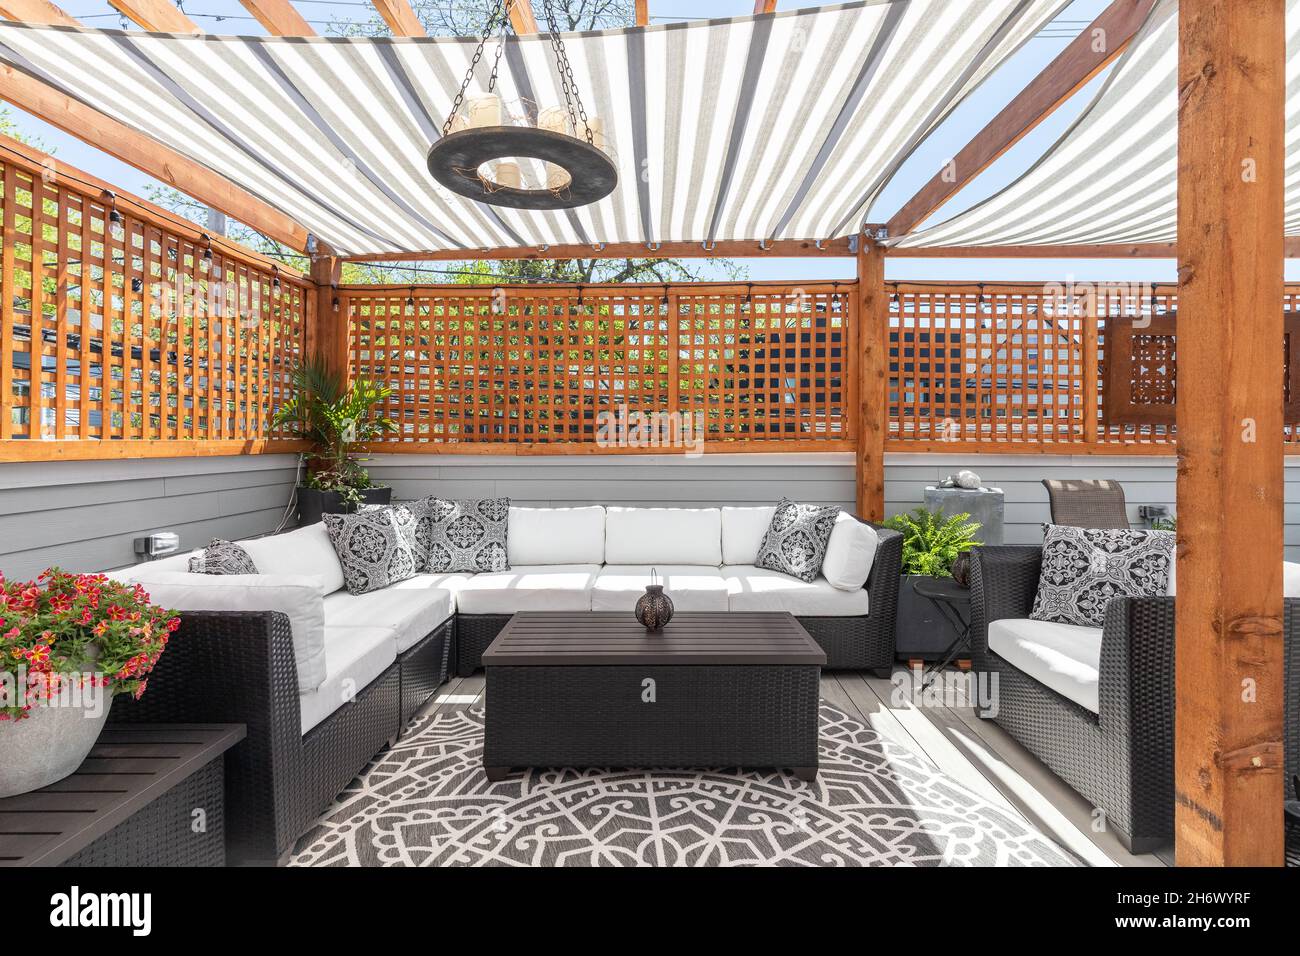 Eine gemütliche Dachterrasse mit überdachten Pergolen über der Oberseite, Gartenmöbel, und die Sonne, die durch. Stockfoto